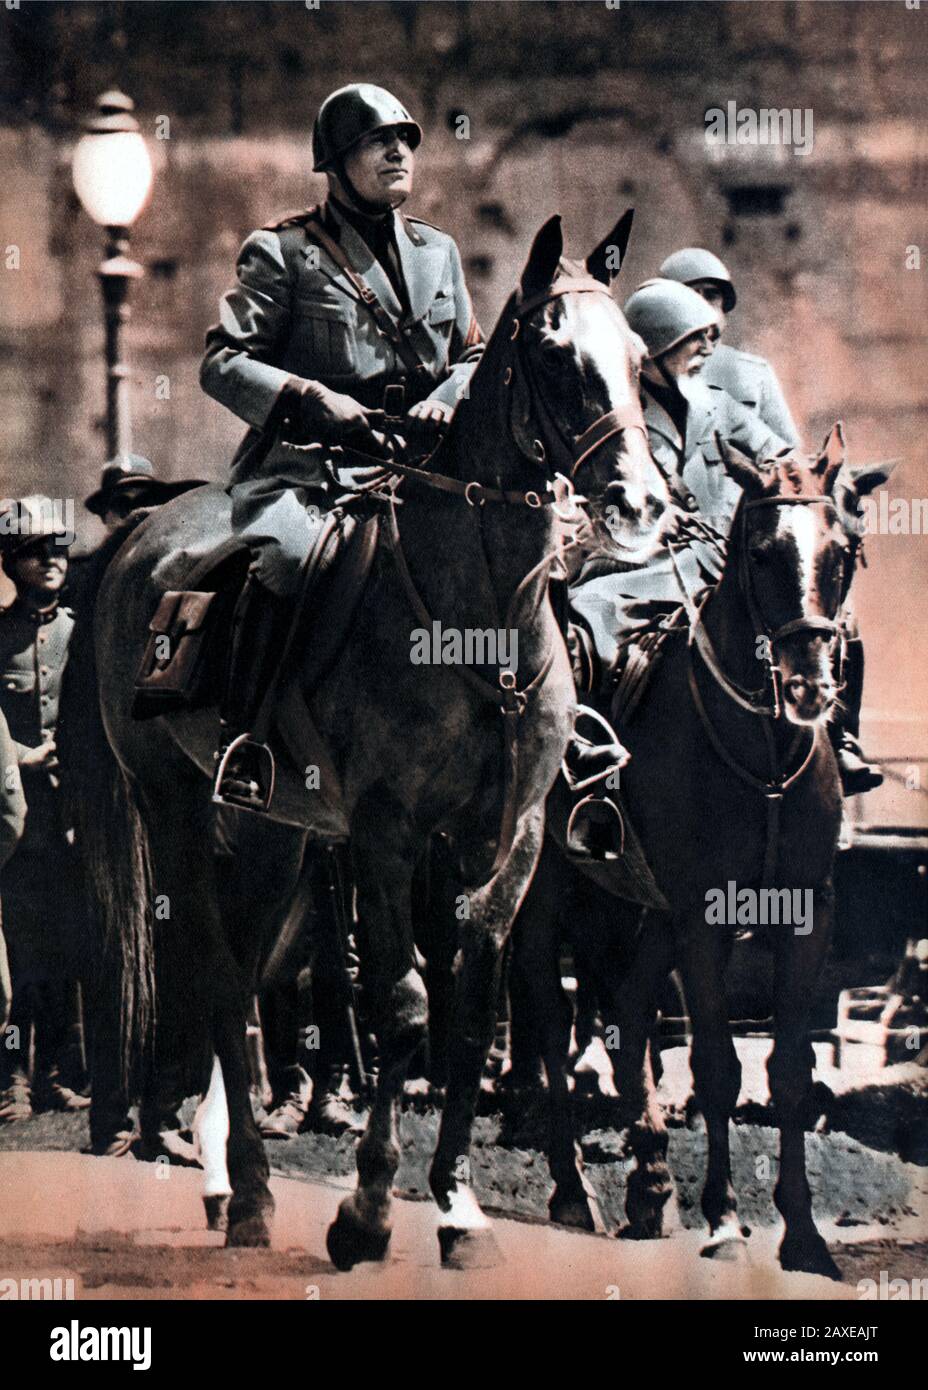 1934 , Roma , ITALY : The italian Fascist Duce BENITO MUSSOLINI rides an horse  - ritratto - portrait - POLITICA - POLITICO -  ITALIA - POLITIC - portrait - ITALY - FASCISMO - FASCISM - FASCISTA - cavallo - cavalcare - cavaliere - cavallerizzo -  ITALIA - ANNI TRENTA - '30 - 30's - stivali - boots - military uniform - divisa uniforme militare  ----  Archivio GBB Stock Photo